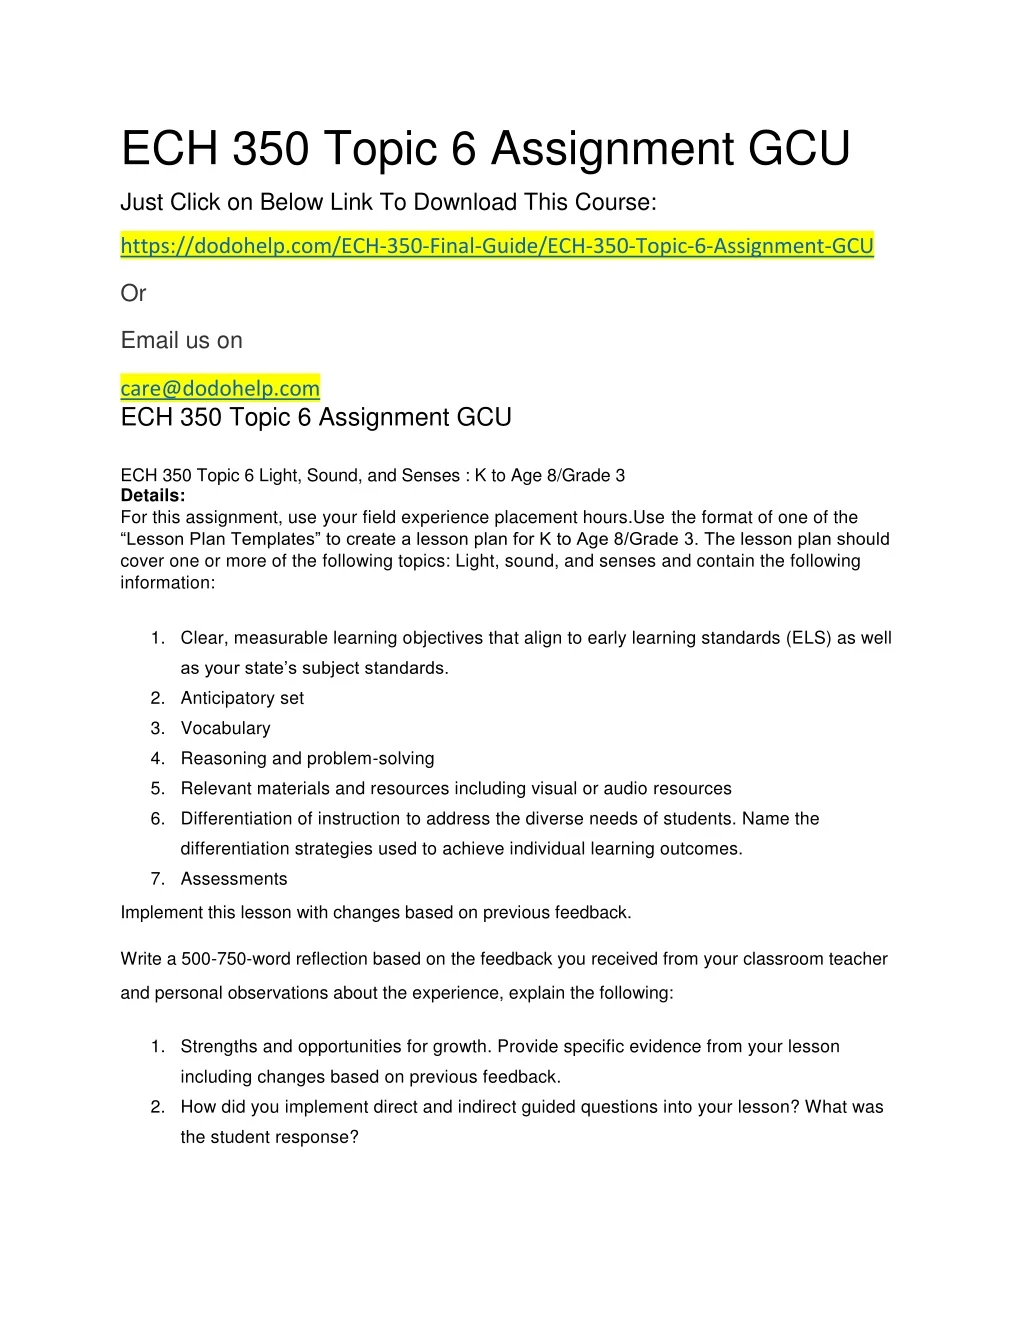 ech 350 topic 6 assignment gcu